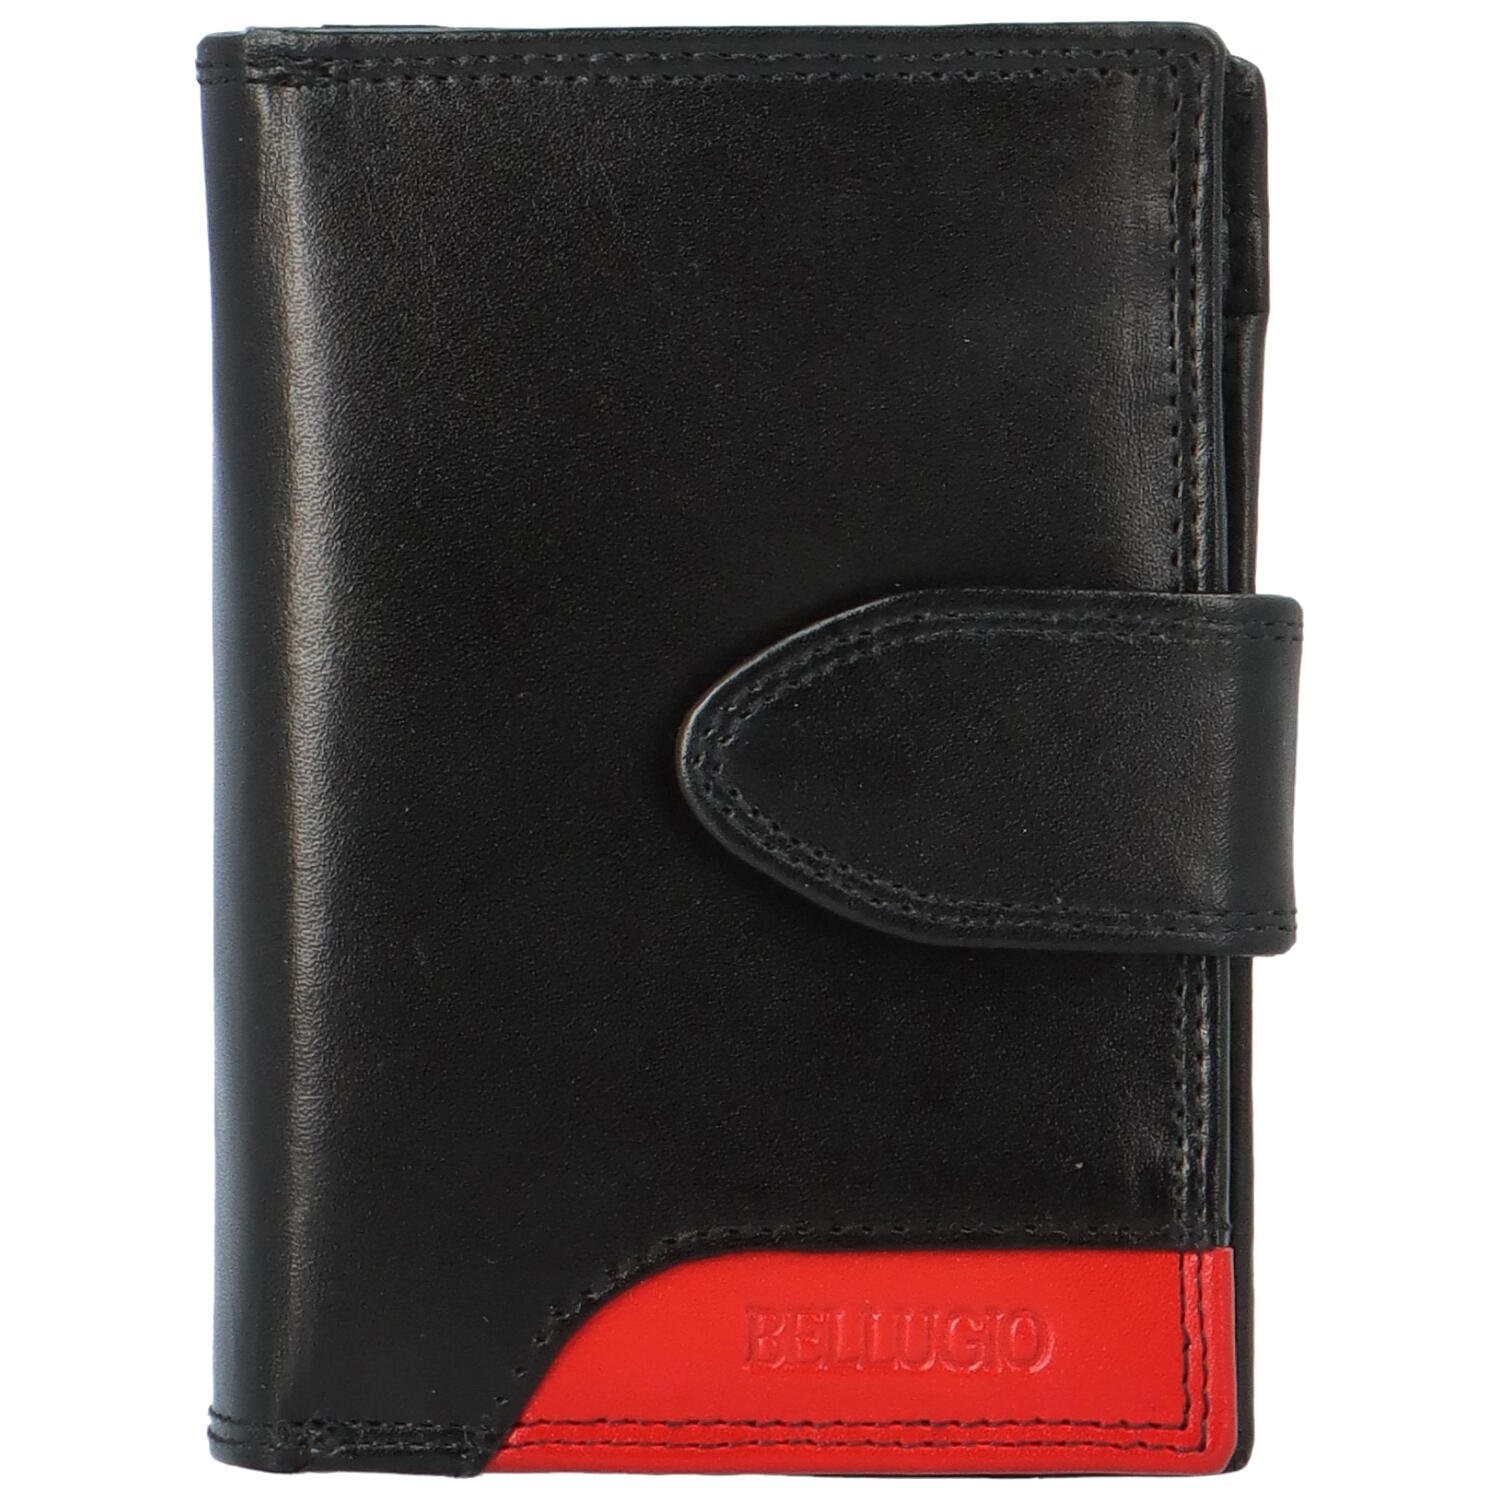 Dámská kožená peněženka černo/červená - Bellugio Misaya černá